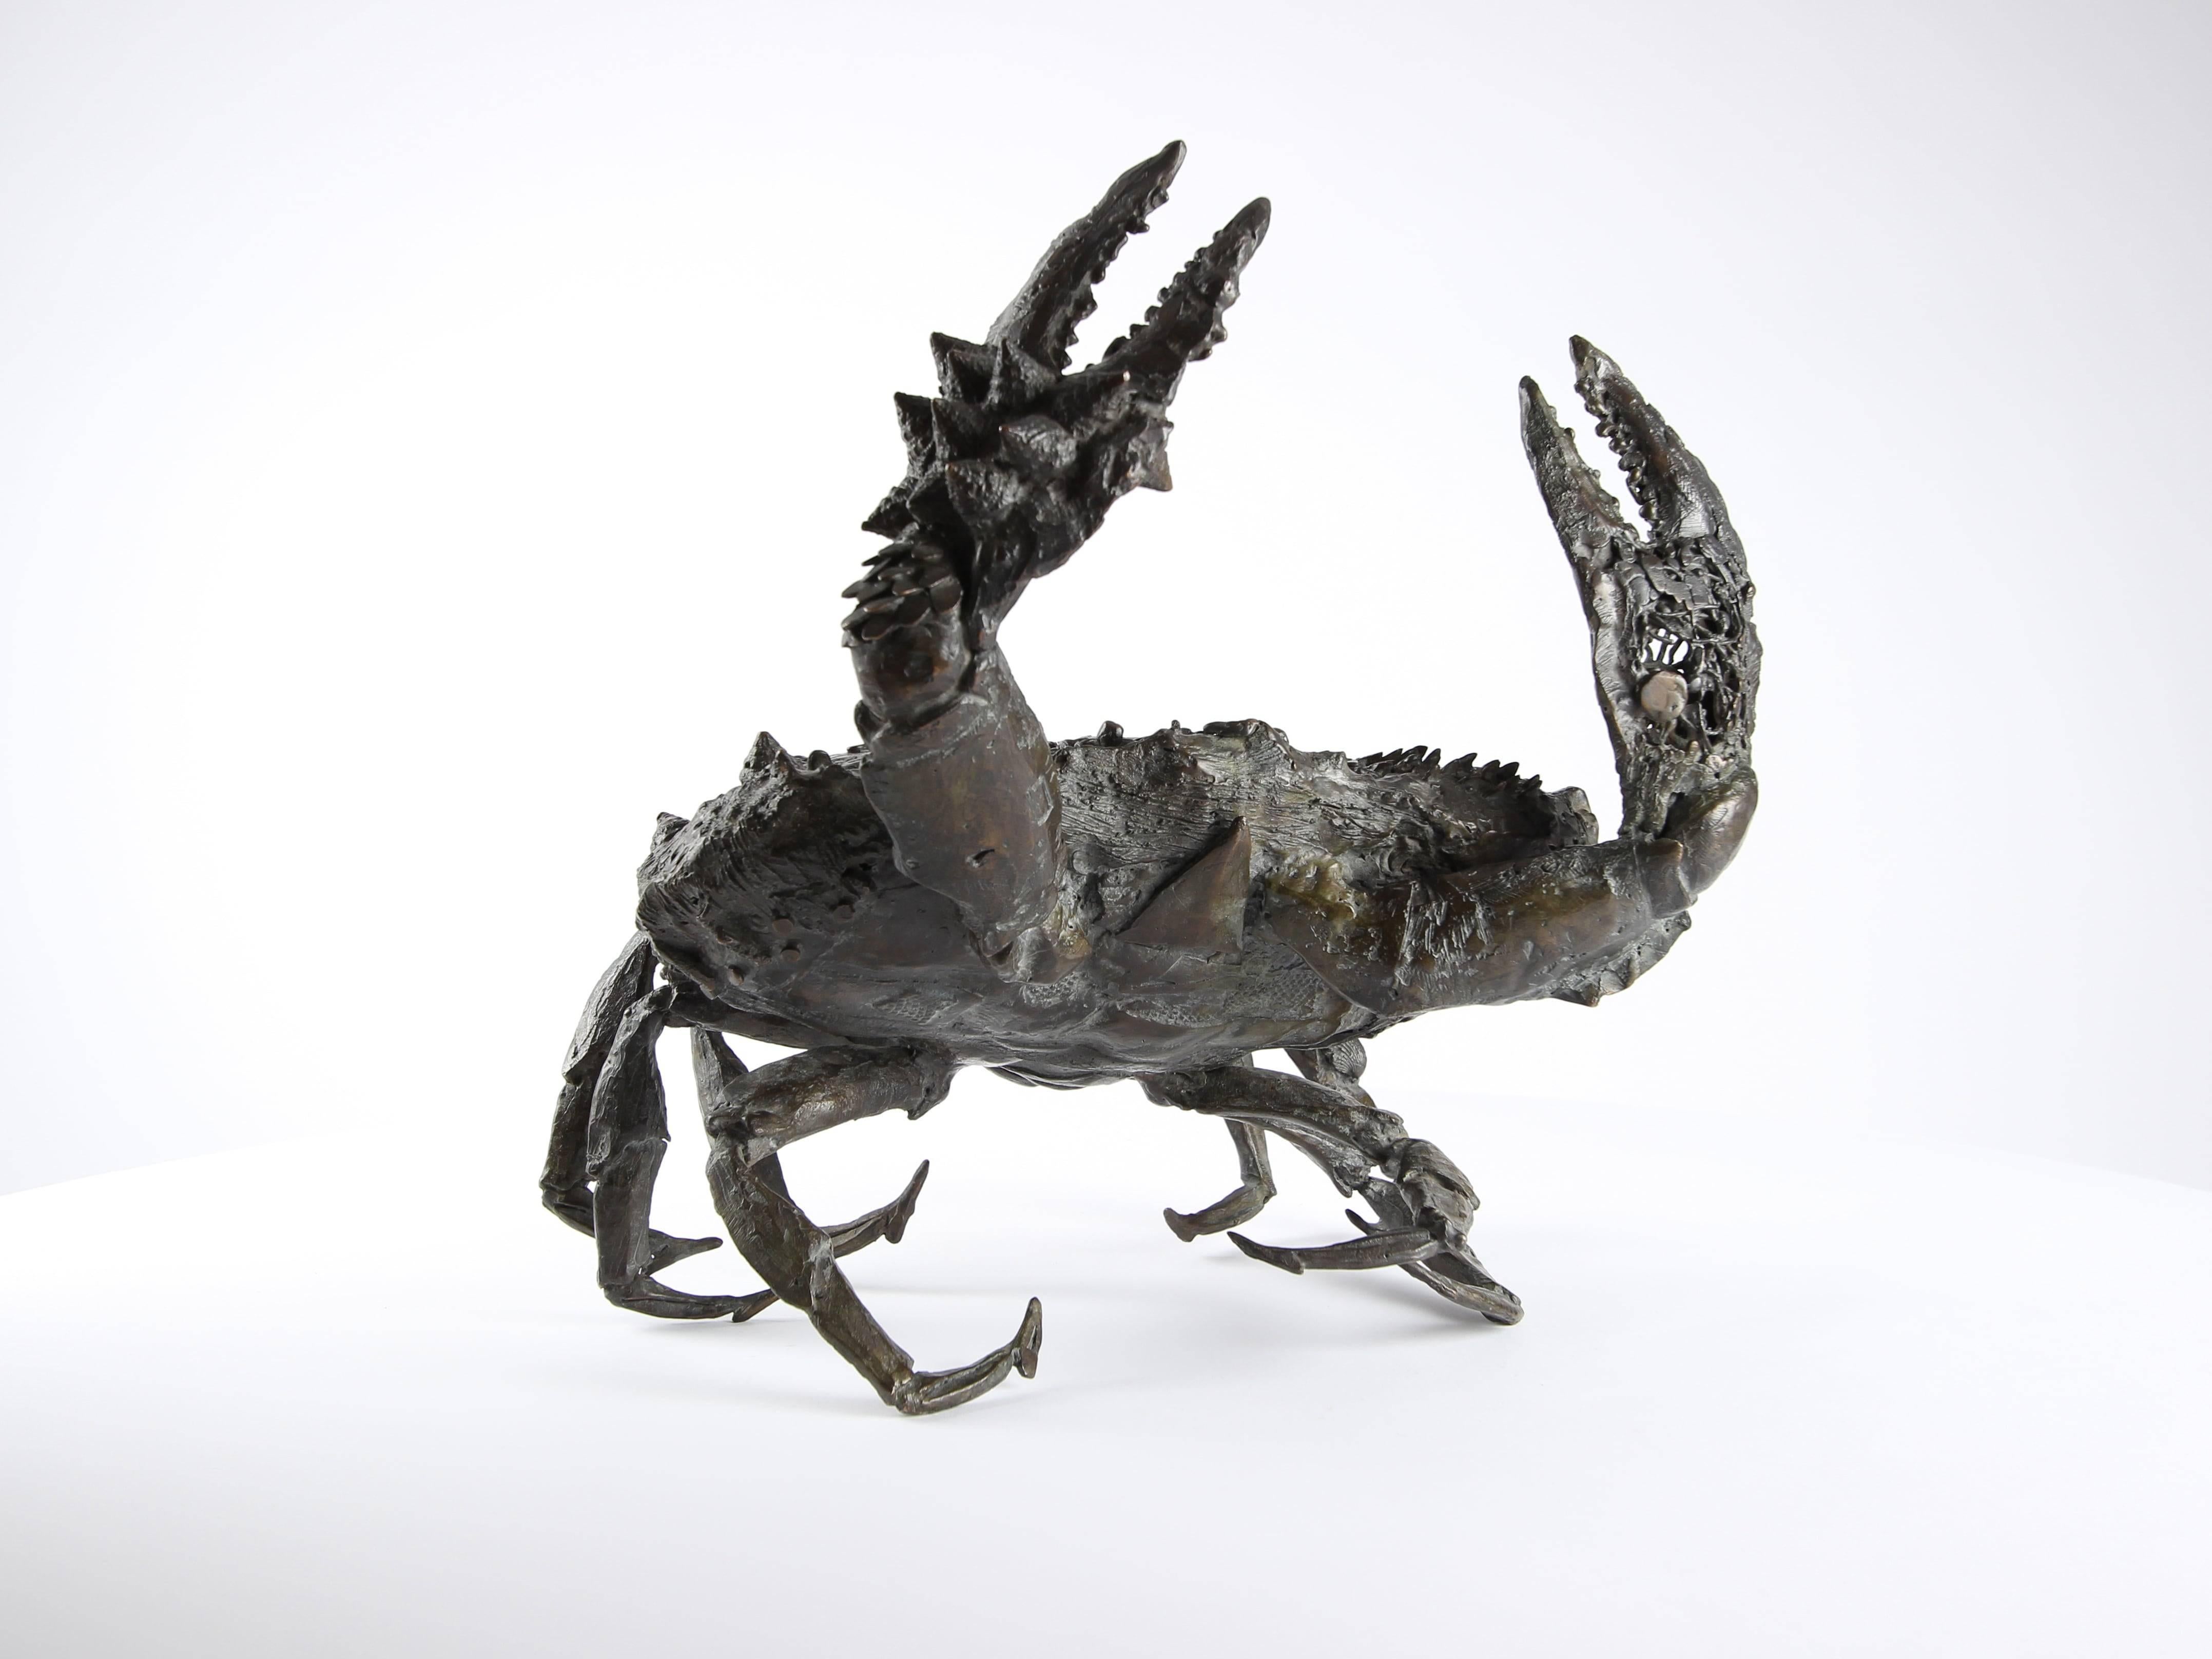 Crabe aux pattelas ist eine einzigartige Bronzeskulptur des zeitgenössischen Künstlers Chésade mit den Maßen 38 × 31 × 30 cm (15 × 12,2 × 11,8 in). Die Skulptur ist signiert und wird mit einem Echtheitszertifikat geliefert.

Diese Skulptur ist